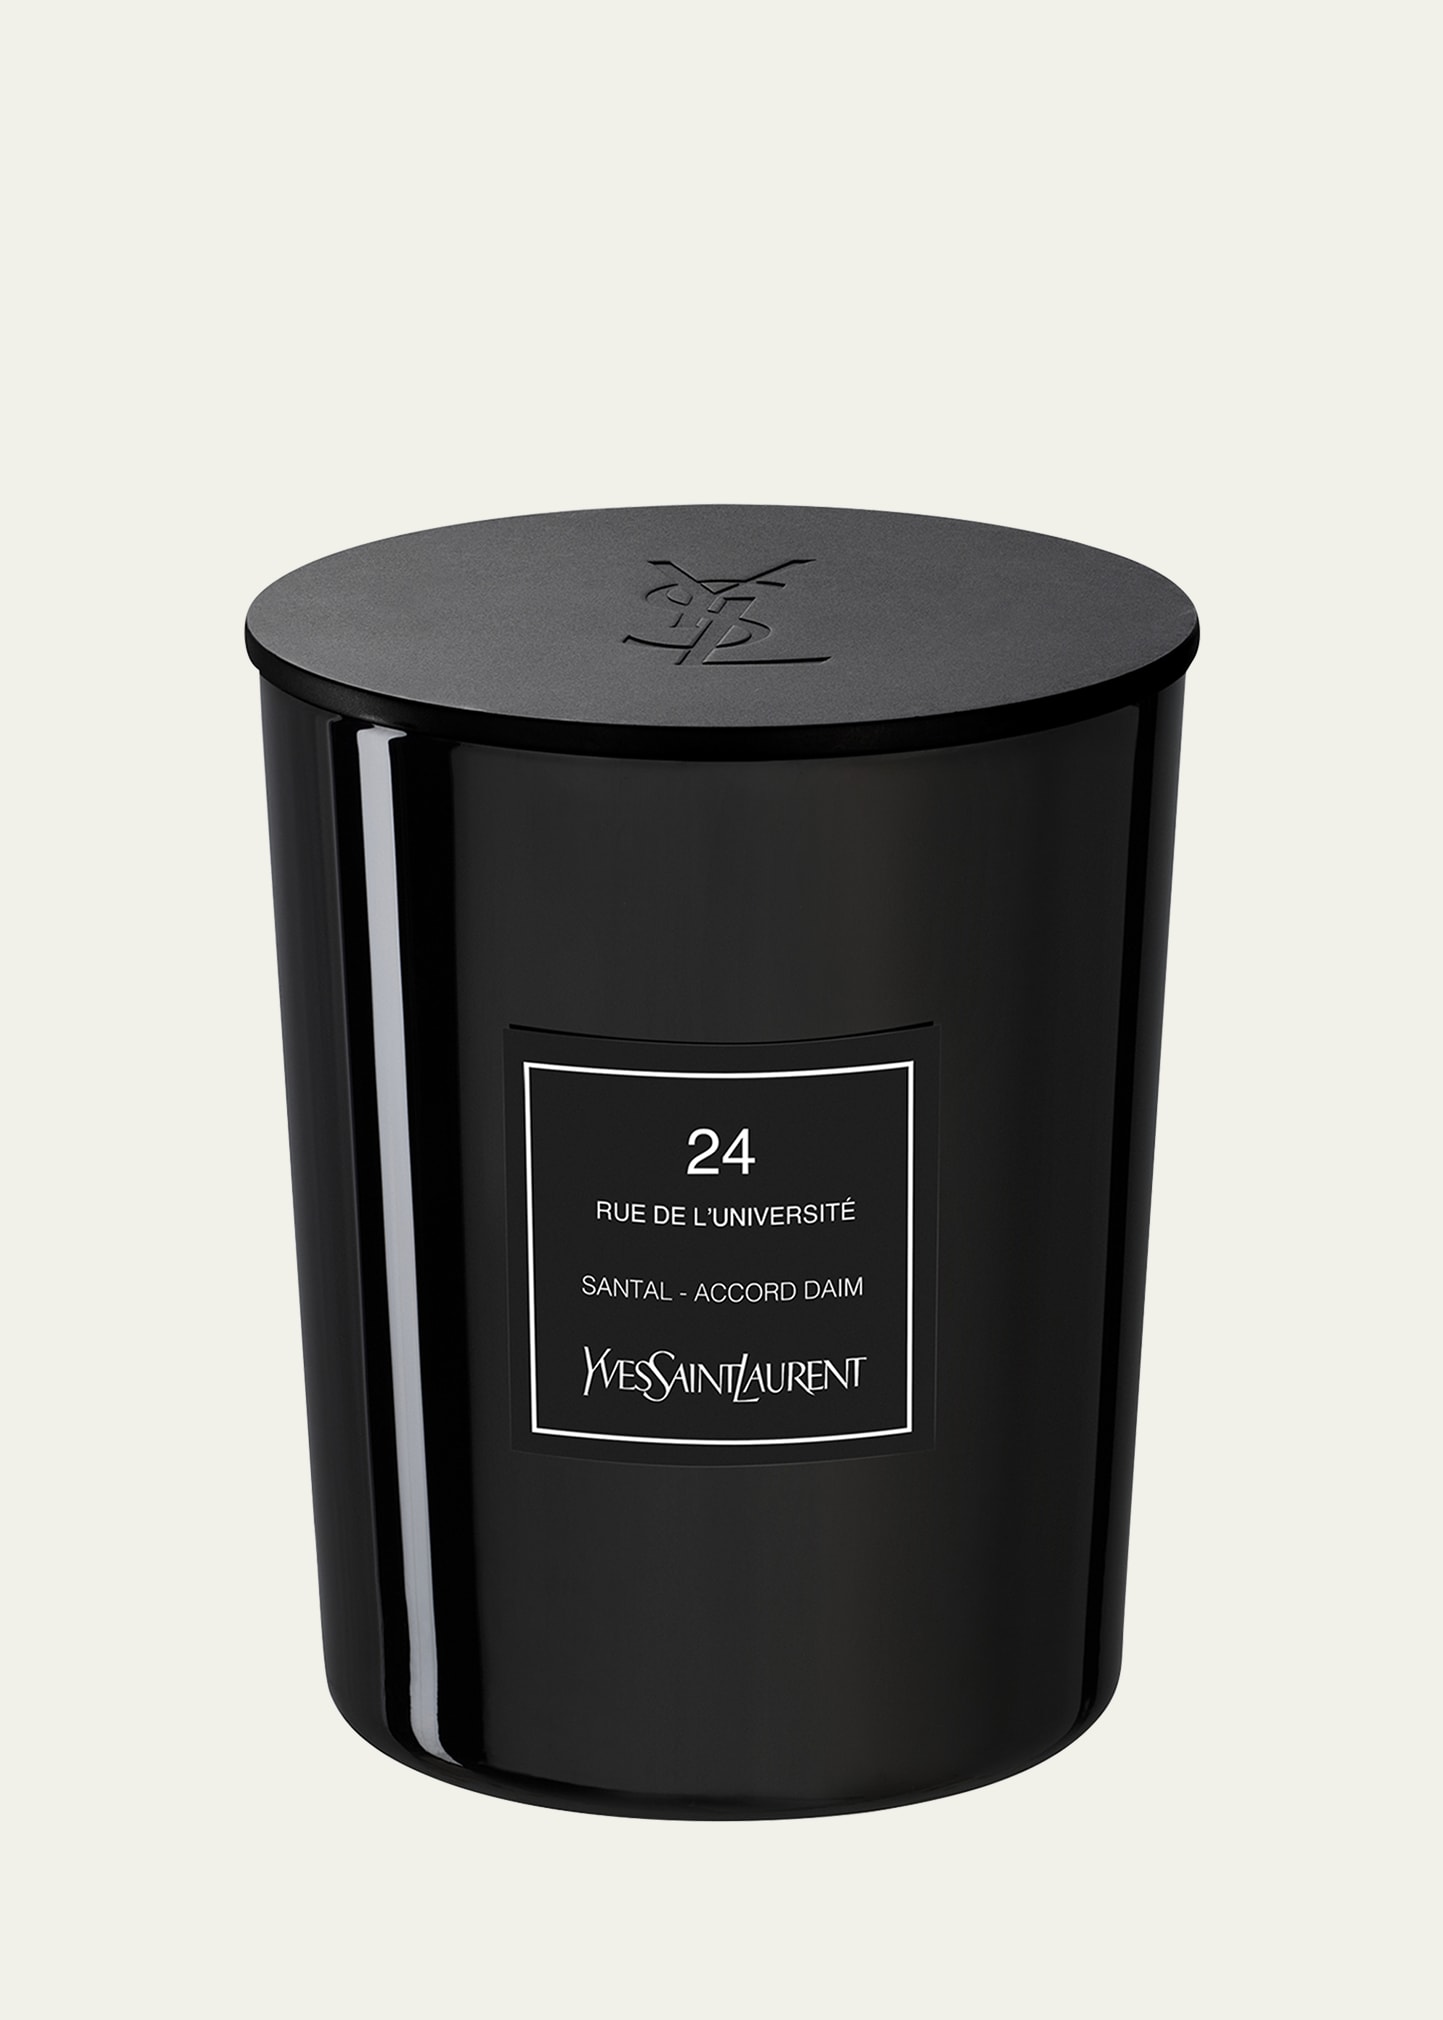 24 Rue De L'universite Candle - Le Vestiaire Des Parfums Couture Edition, 550 g